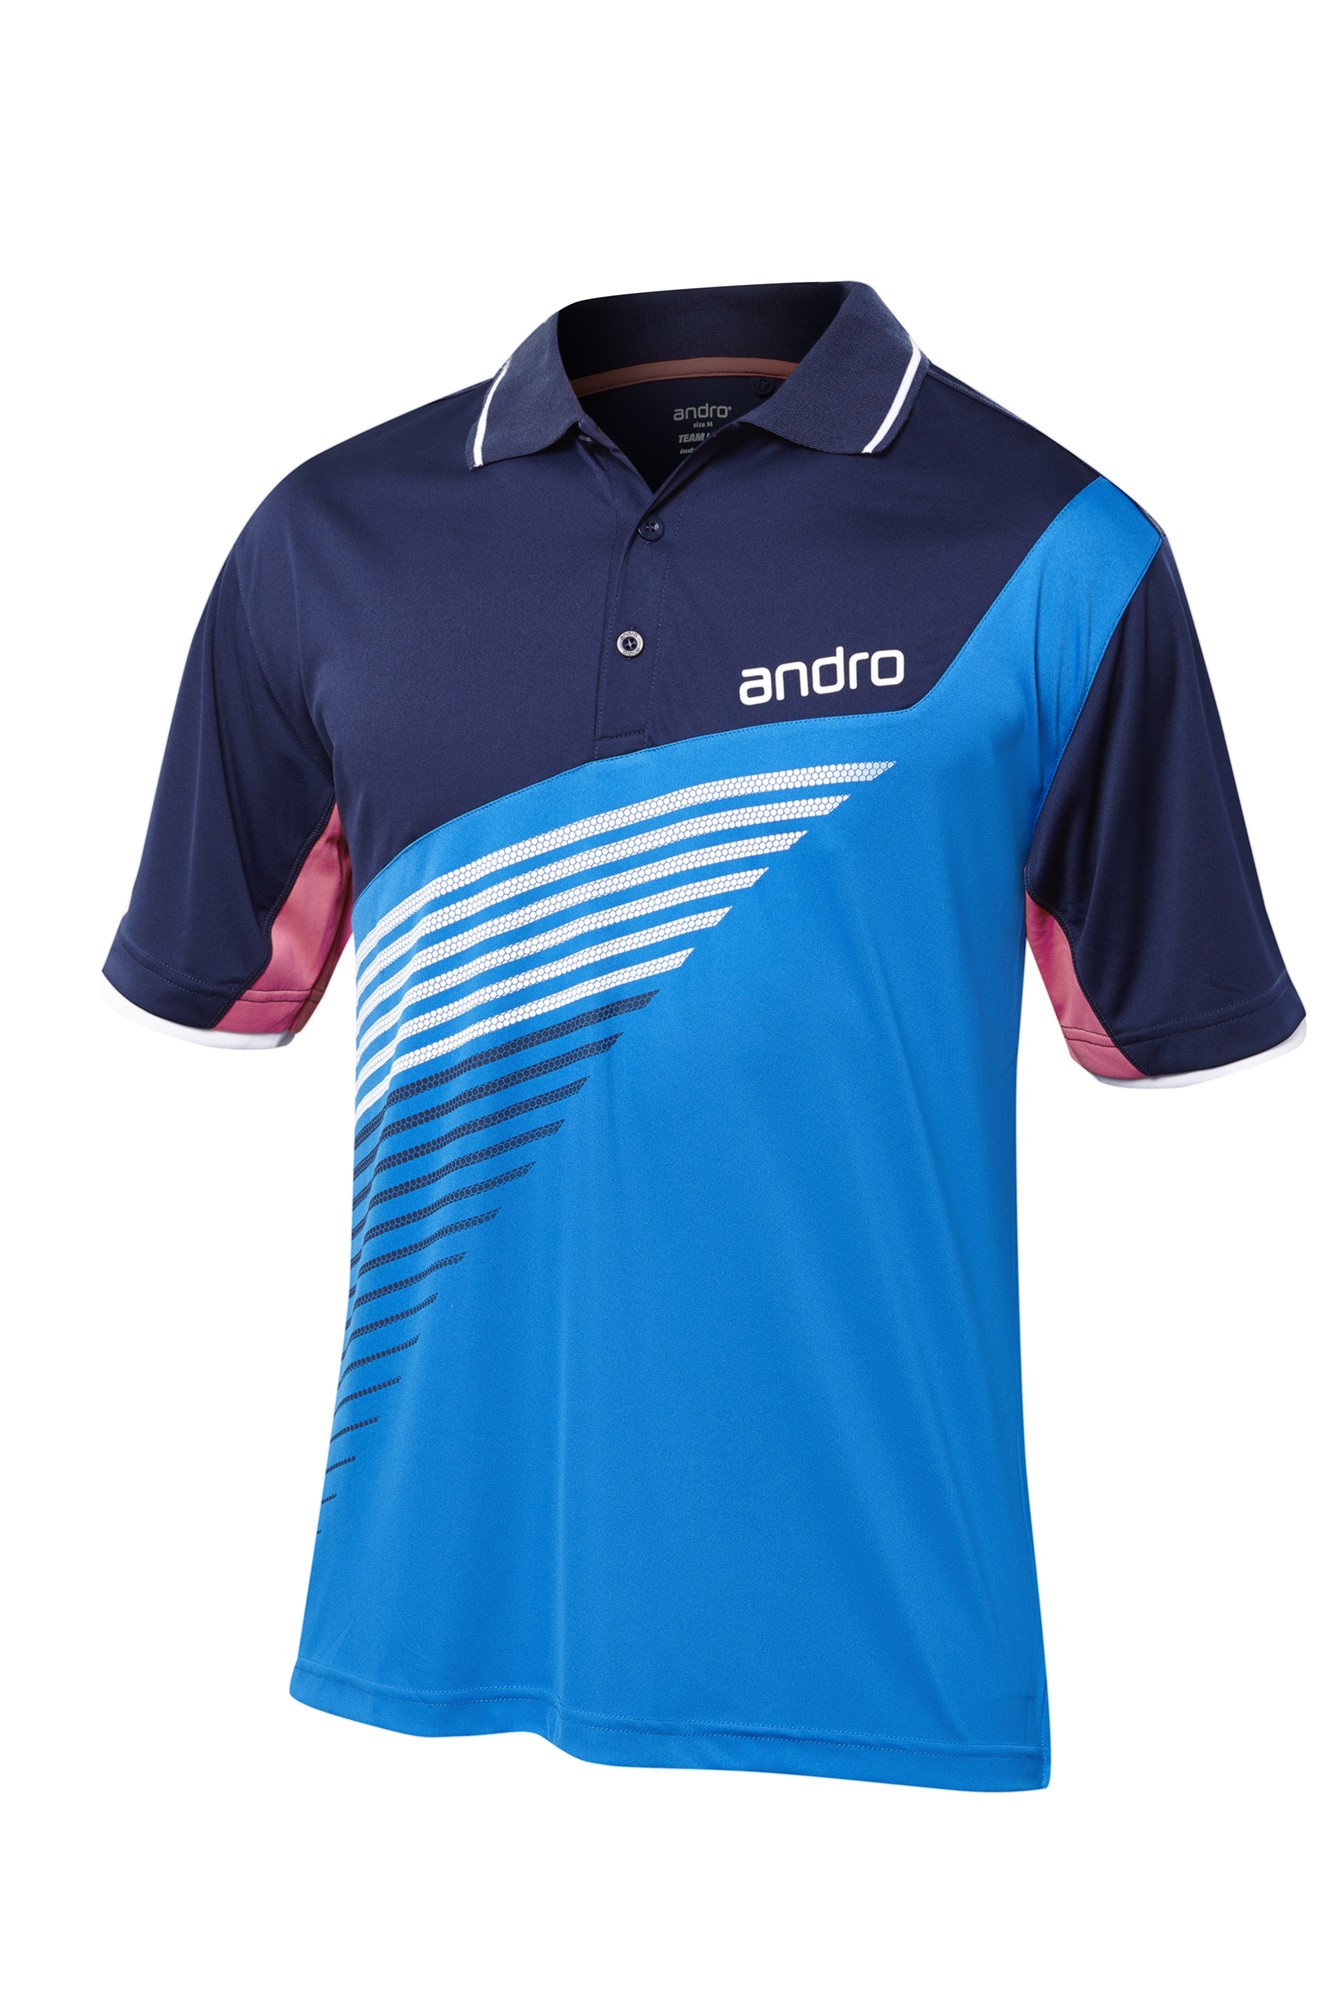 Andro Shirt Harris Cotton blue/navy | Tabletennis11.com (TT11)